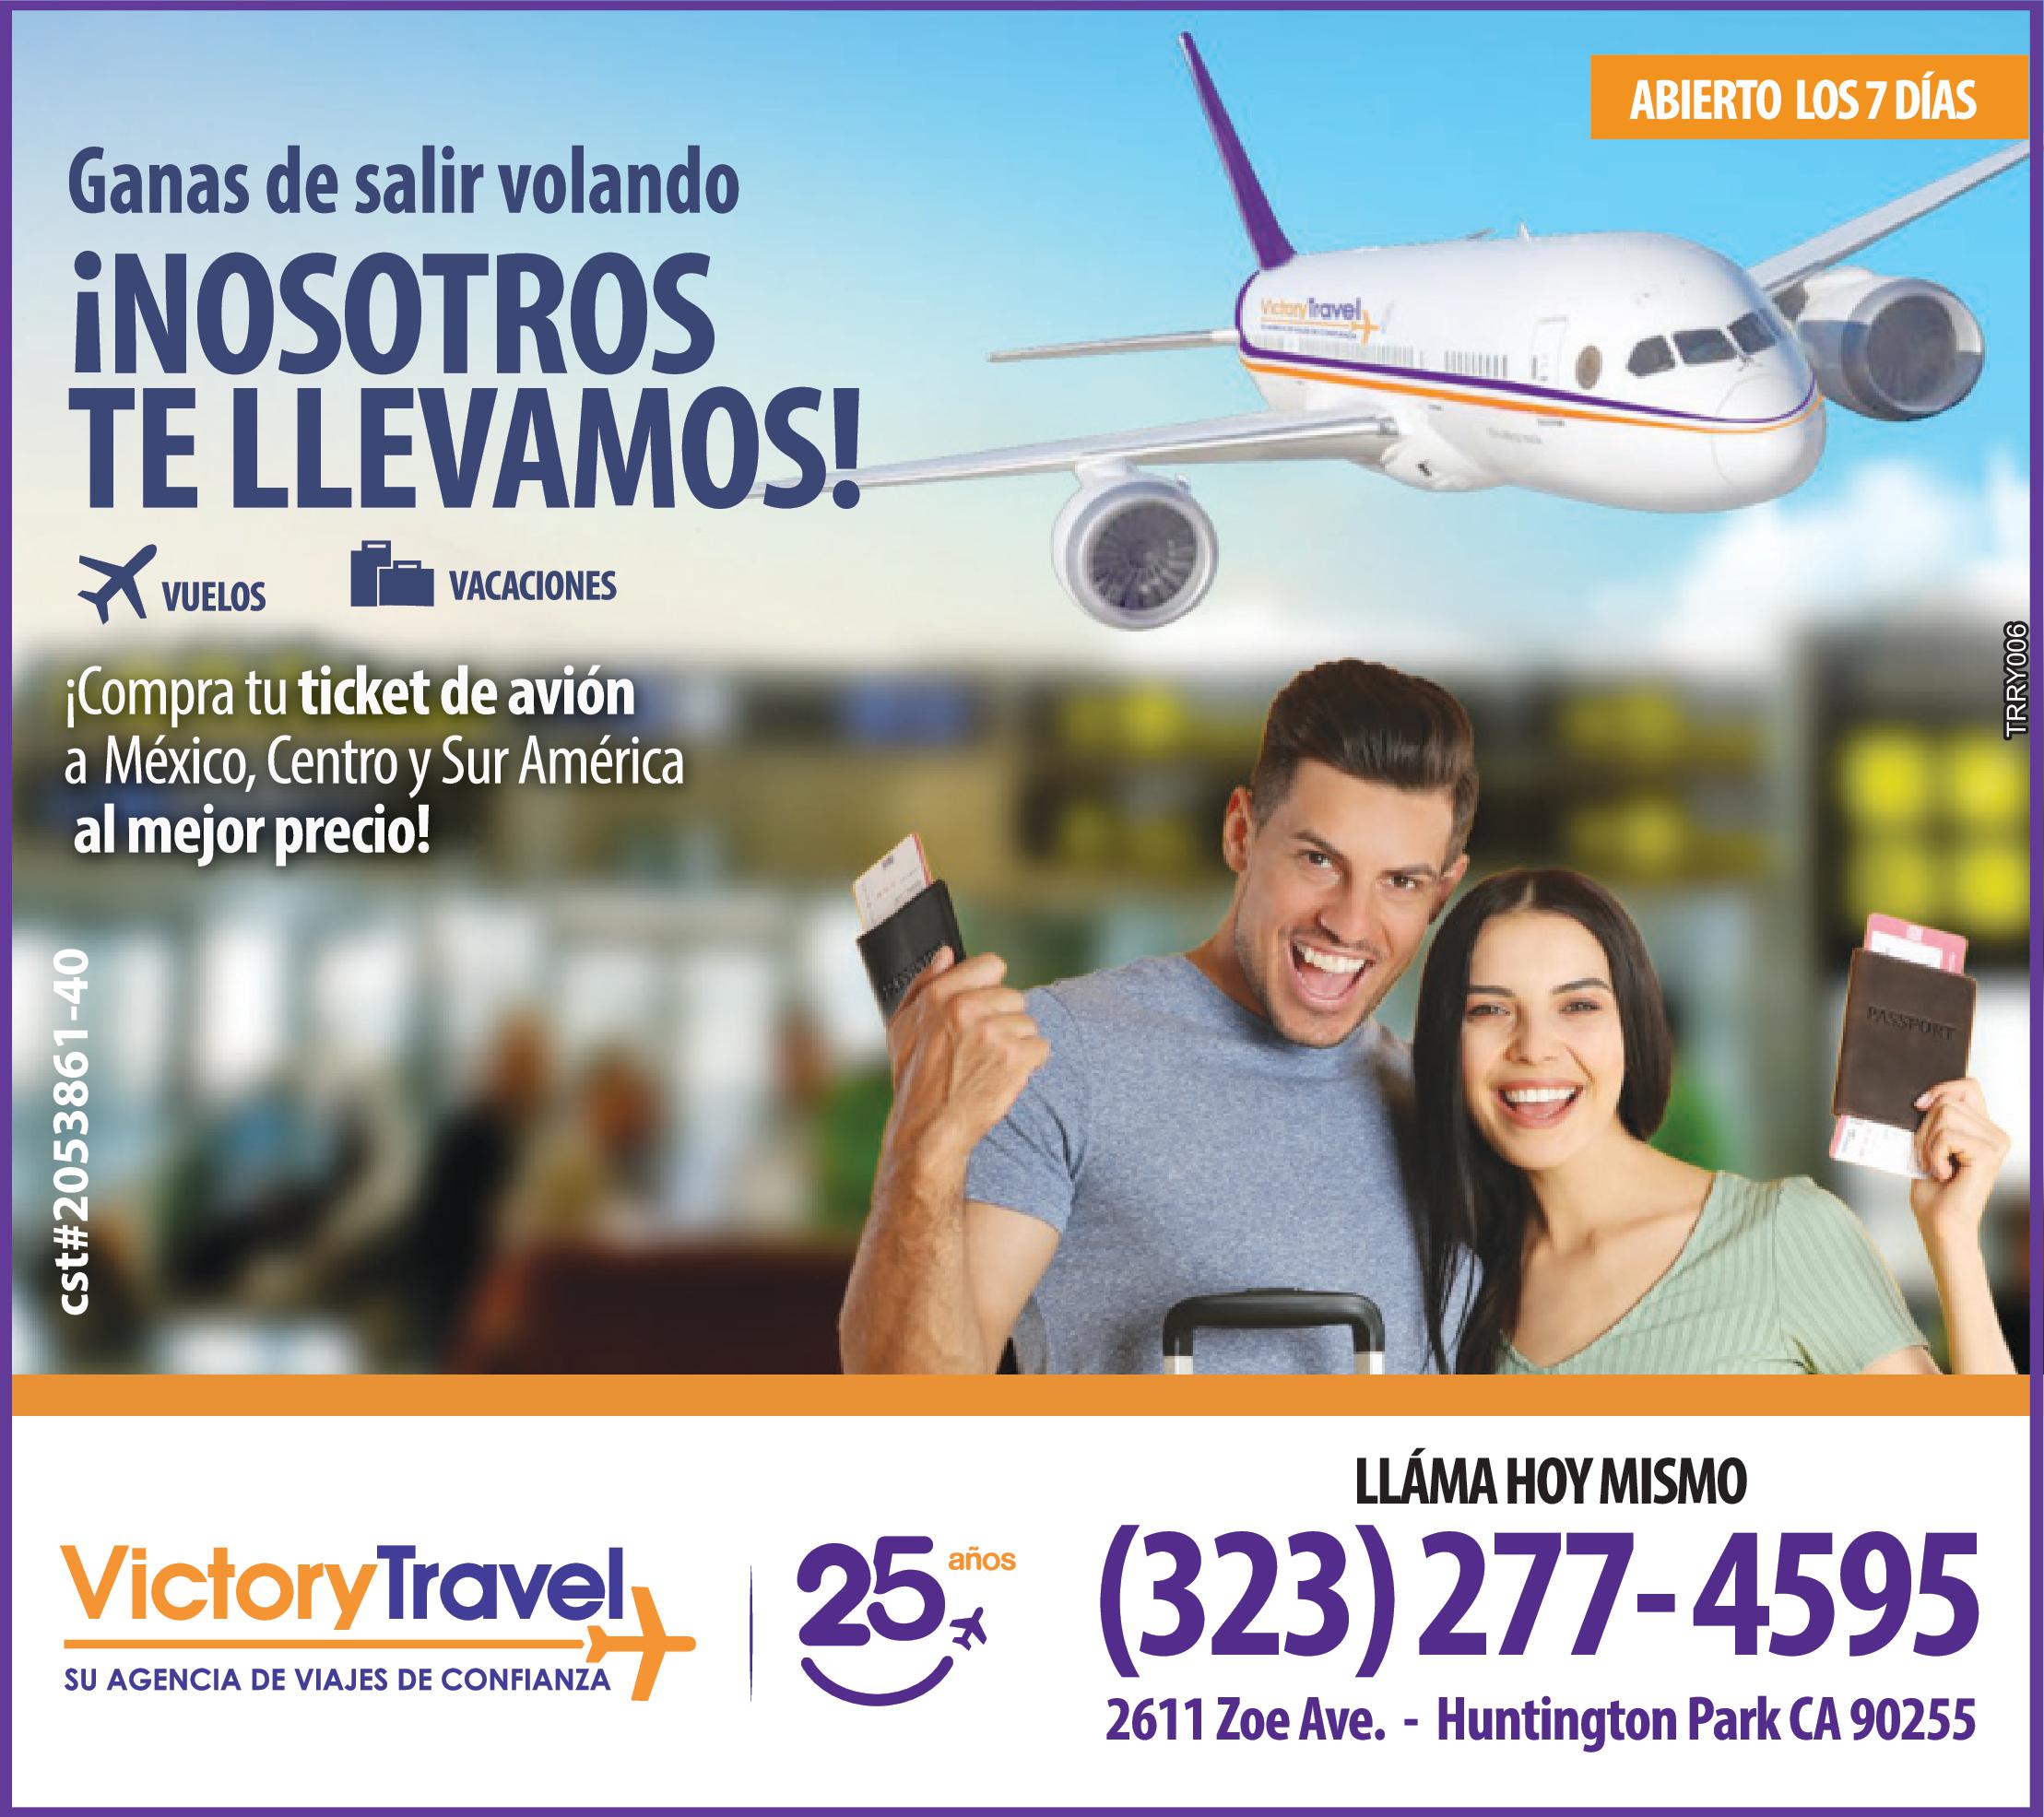 AGENCIA DE VIAJES, ticket de avión, Paquetes turisticos, Hoteles, Vacaciones